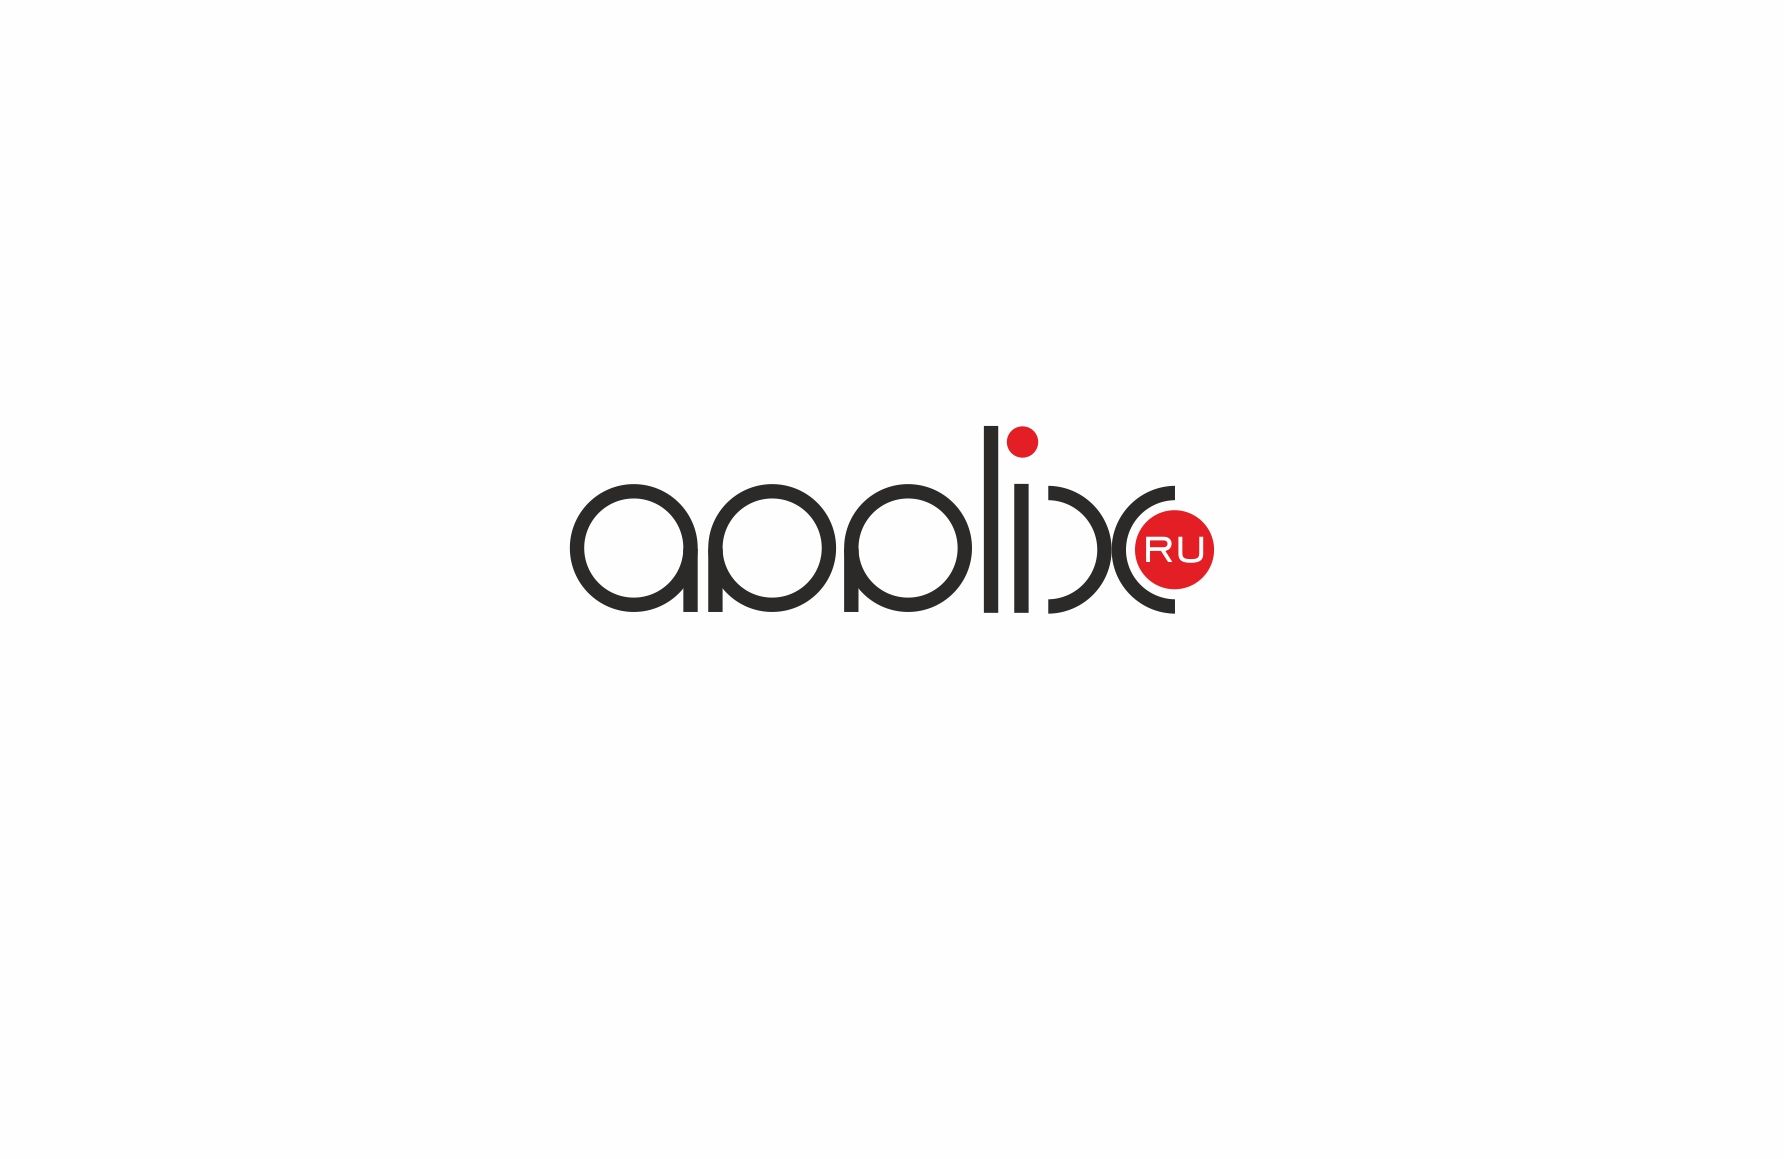 Лого и фирменный стиль для applix.ru / APPLIX.RU - дизайнер pashashama